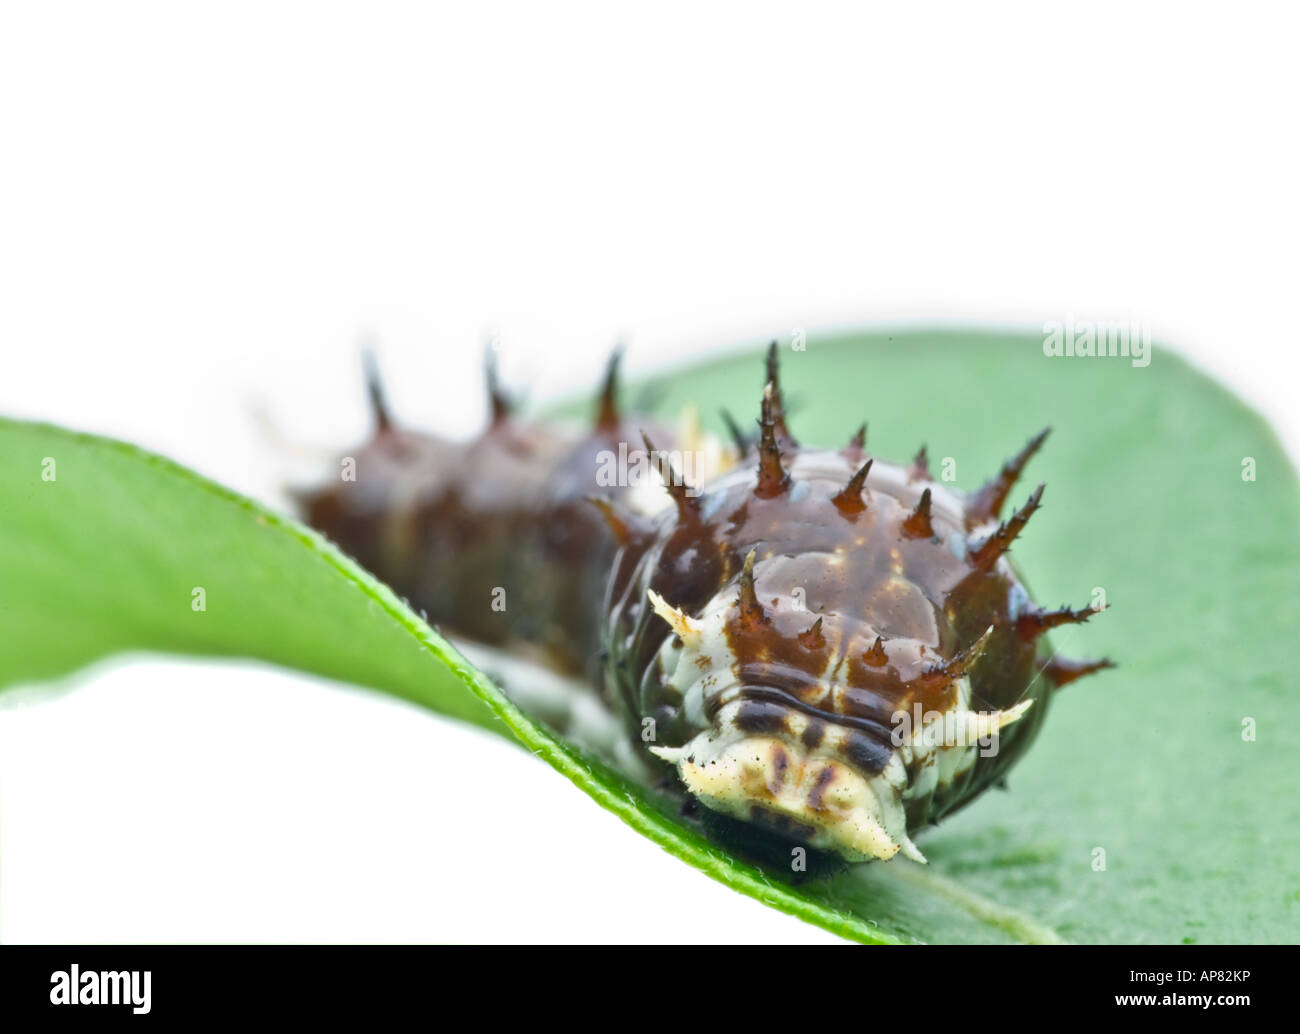 a big spikey caterpillar wanders along a green leaf Stock Photo